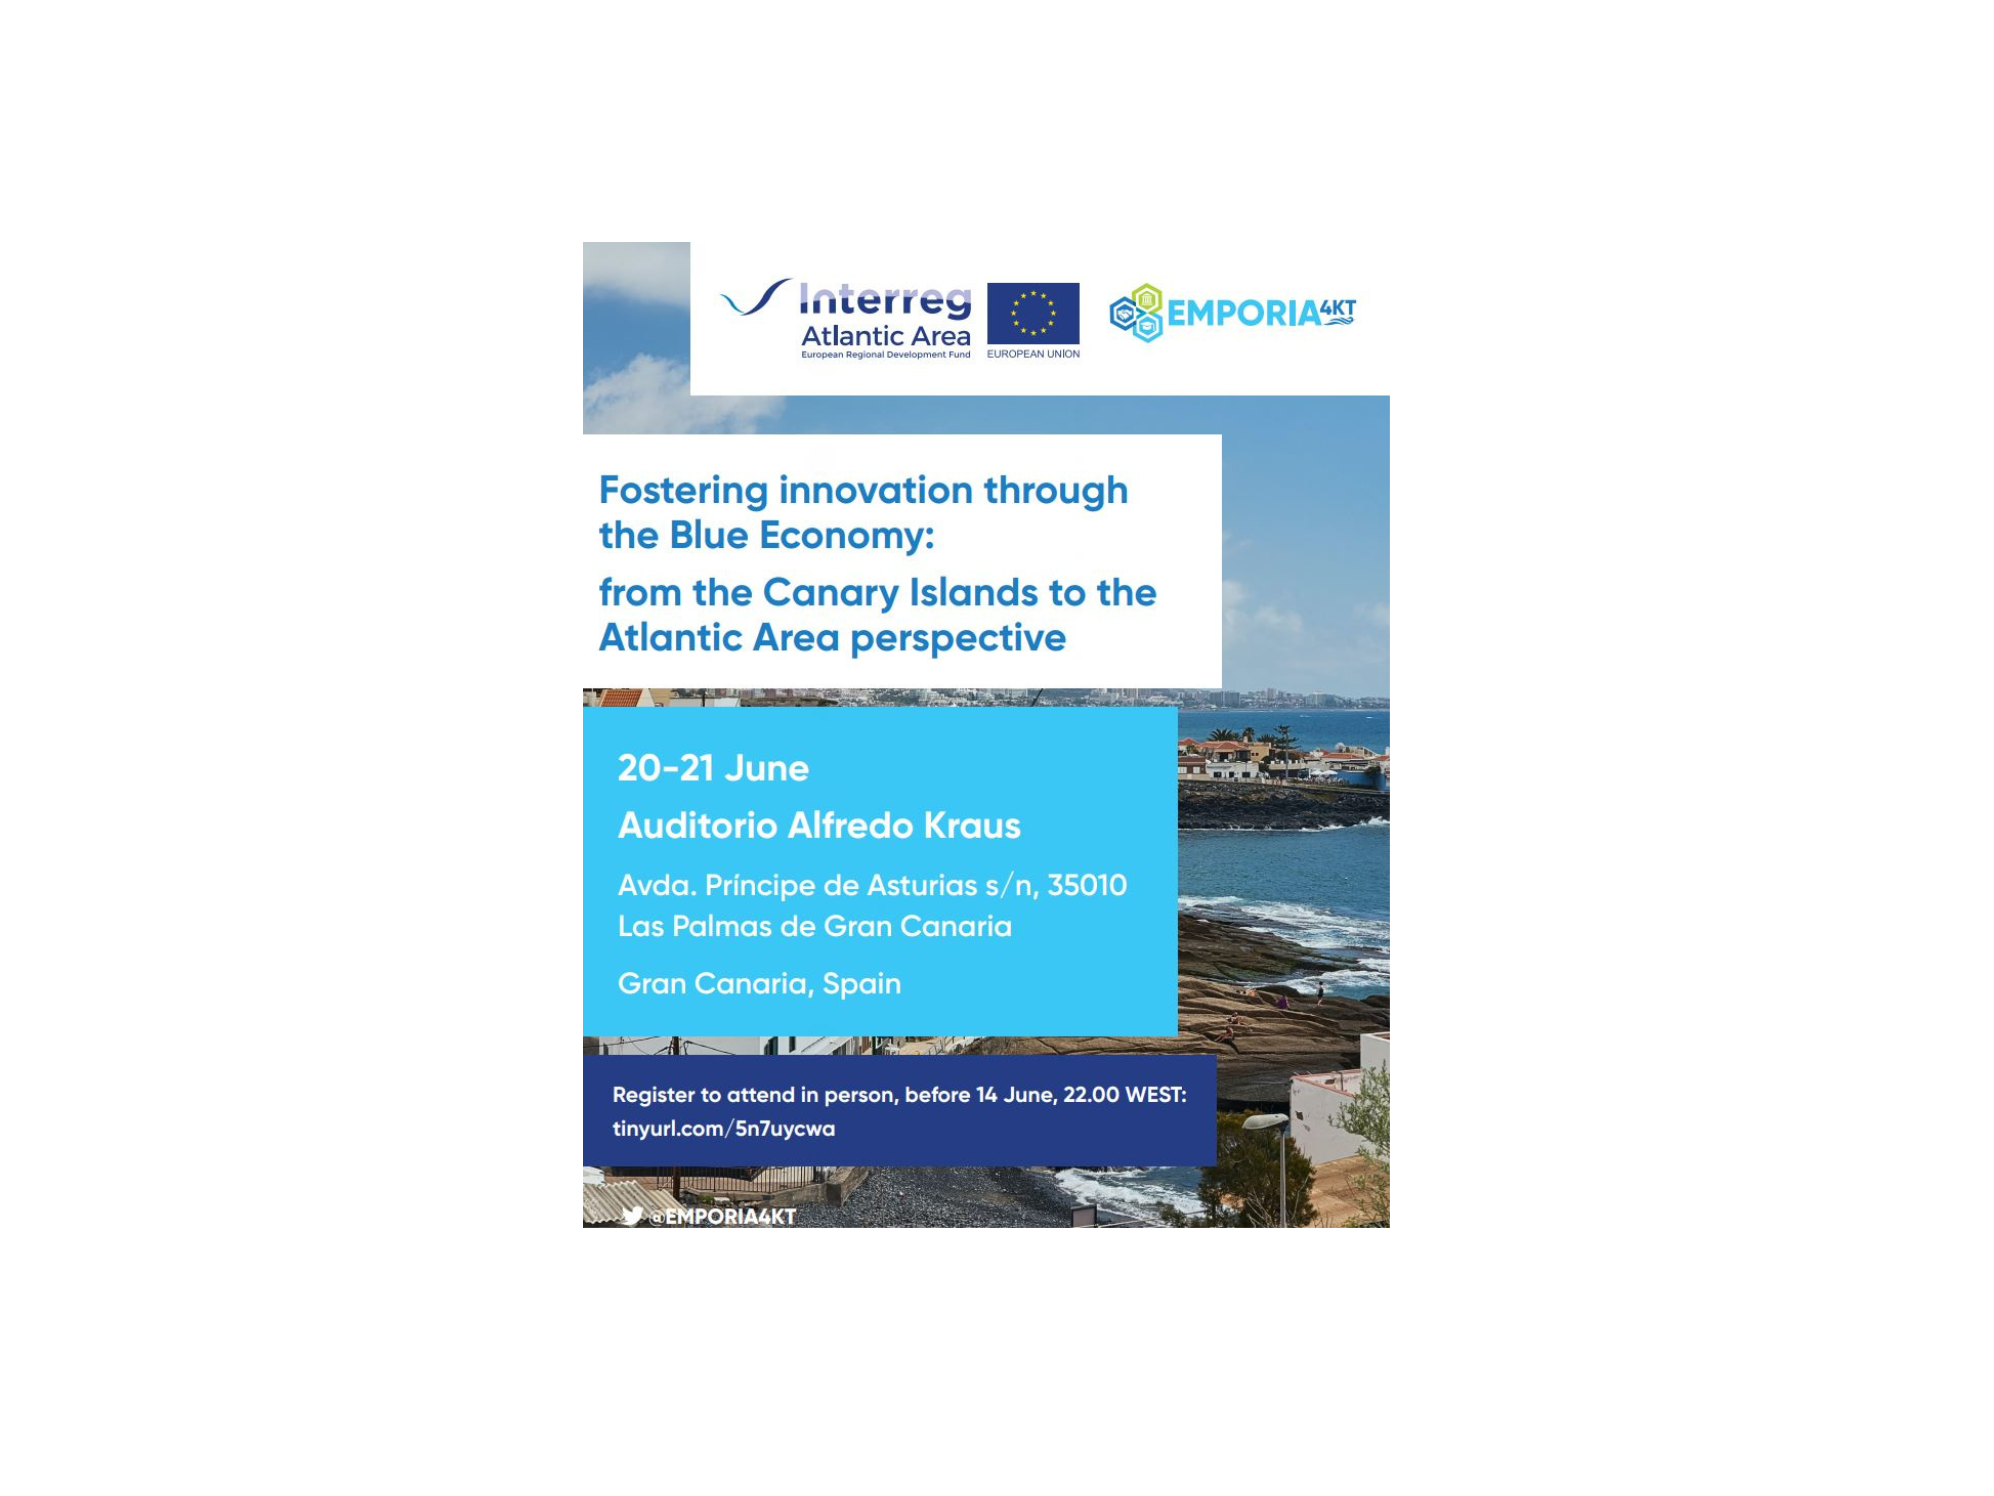 EMPORIA4KT: Fomento de la innovación a través de la economía azul: de Canarias a la perspectiva del Espacio Atlántico